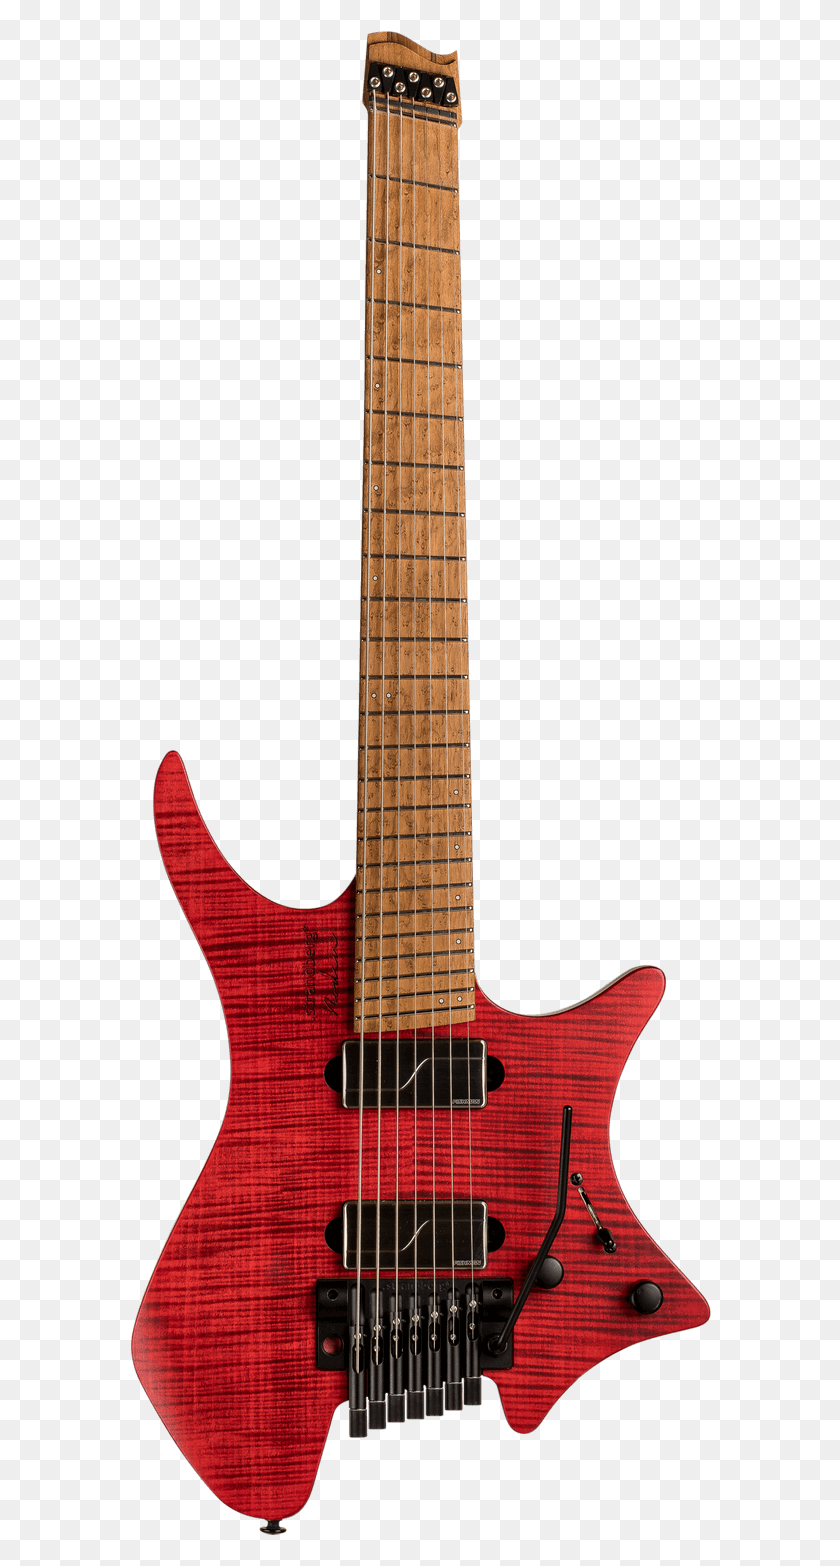 582x1506 Descargar Png Boden Original 7 String Trem Guitarra Roja Strandberg Boden Metal, Actividades De Ocio, Instrumento Musical, Bajo Png